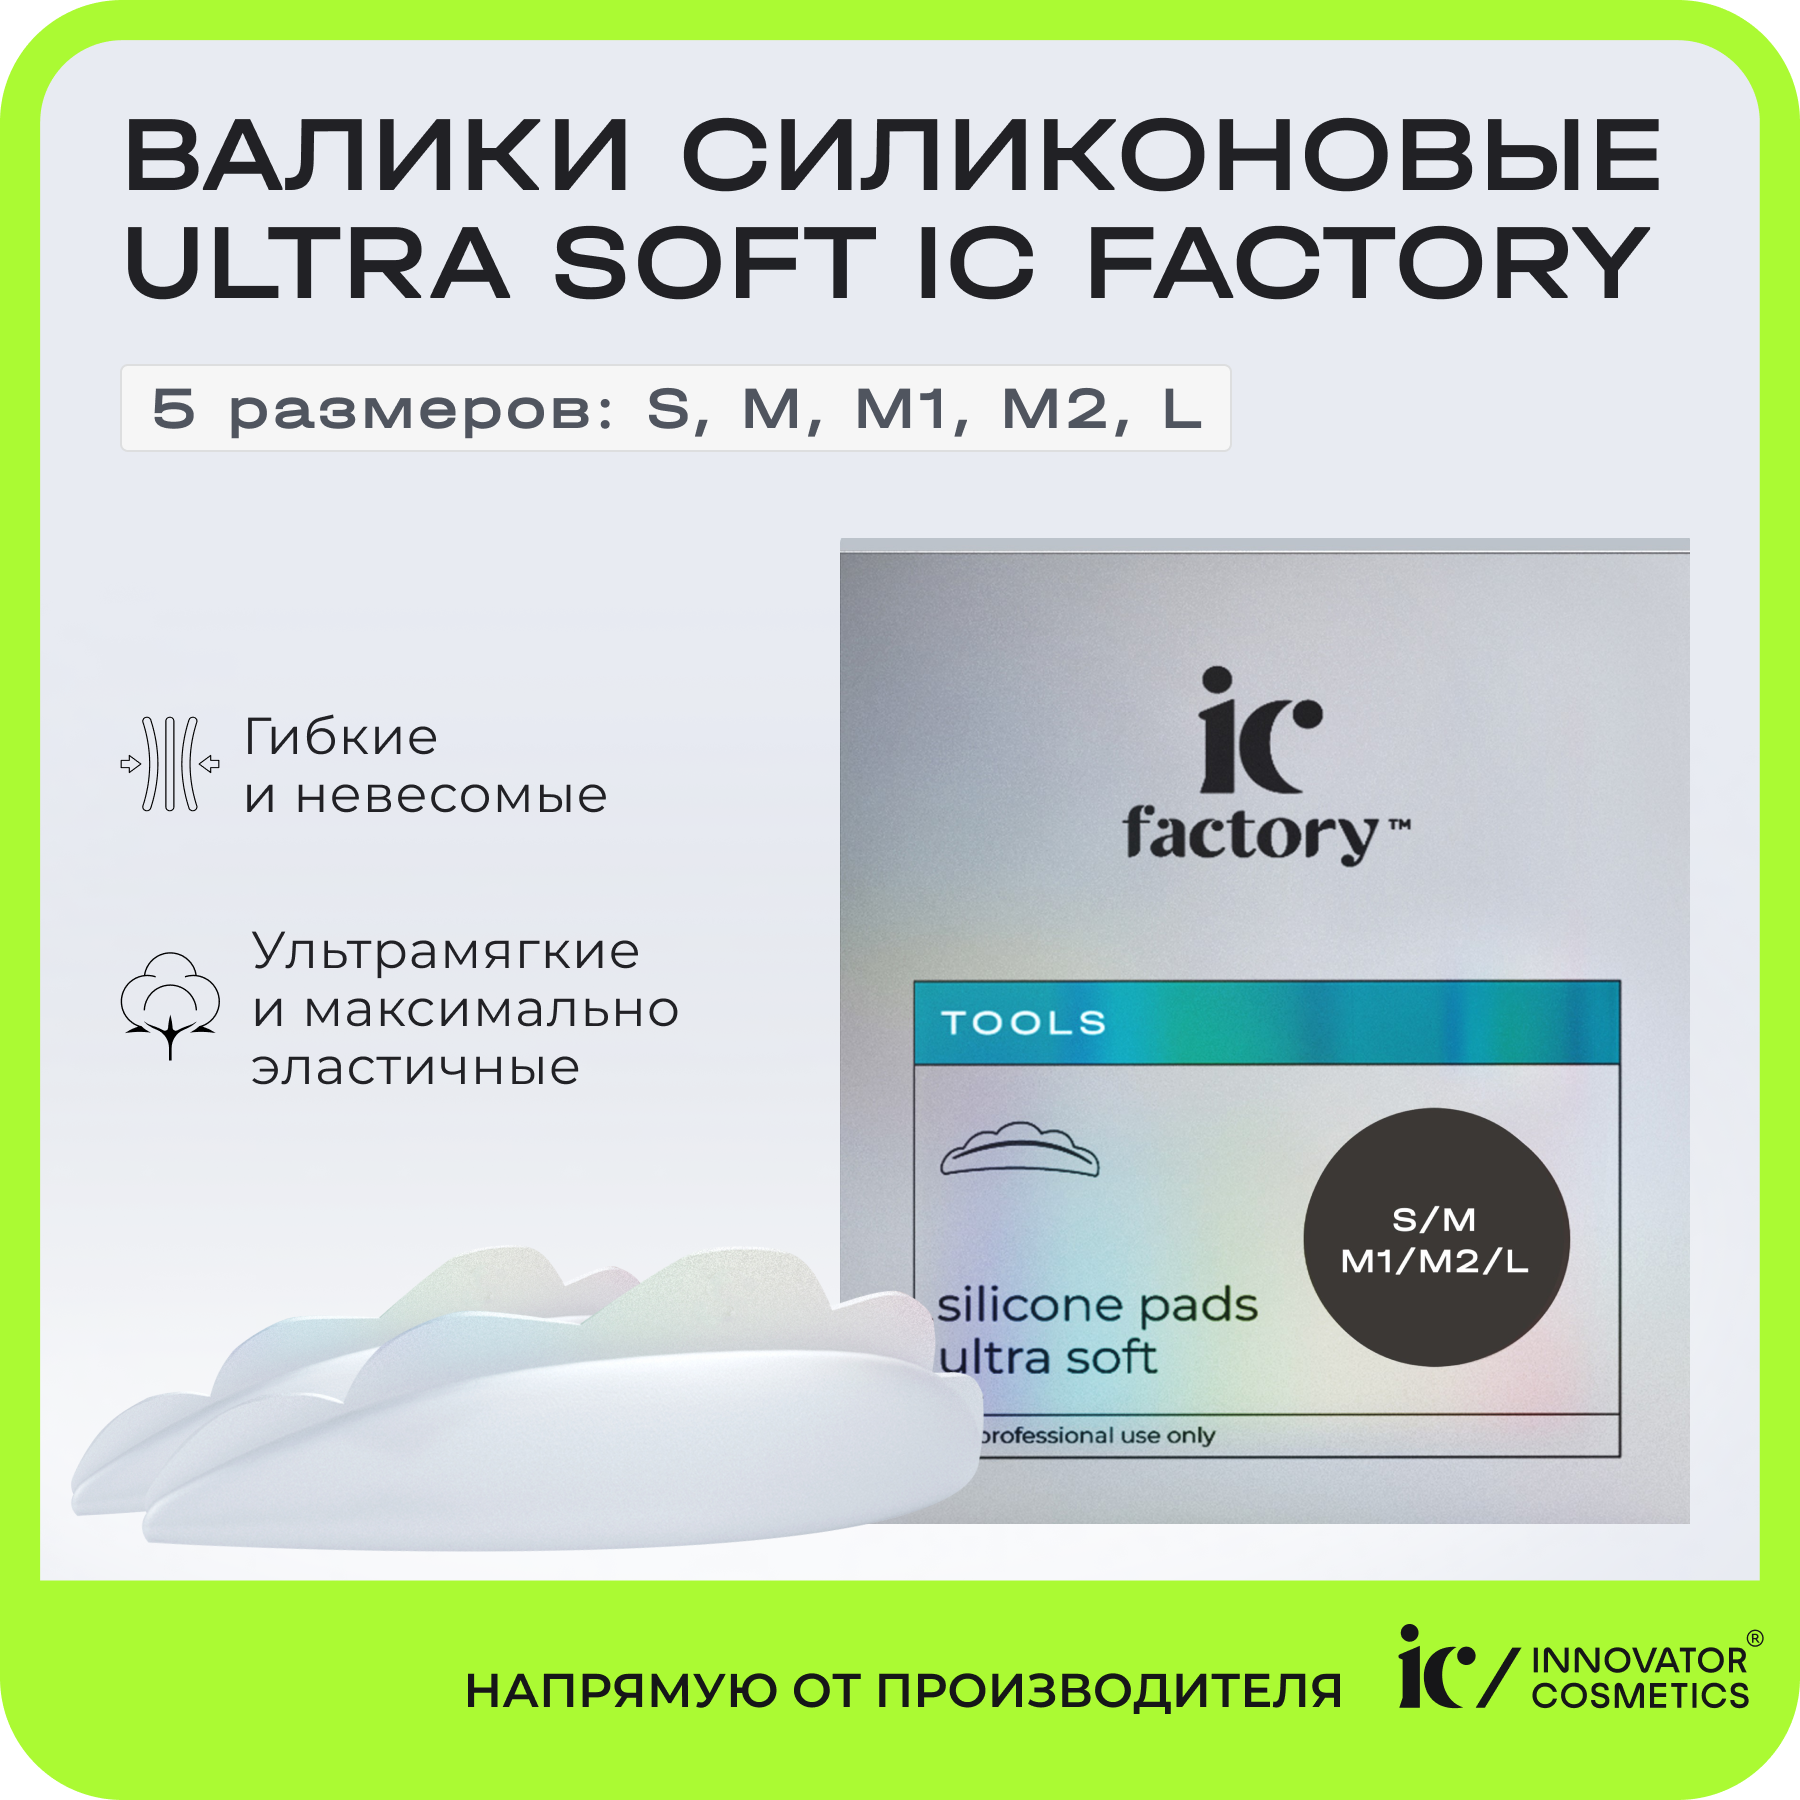 набор валиков поролоновых 8 шт 70 мм фигурные Набор валиков силиконовых Innovator Cosmetics Ultra Soft IC FACTORY, 5 размеров